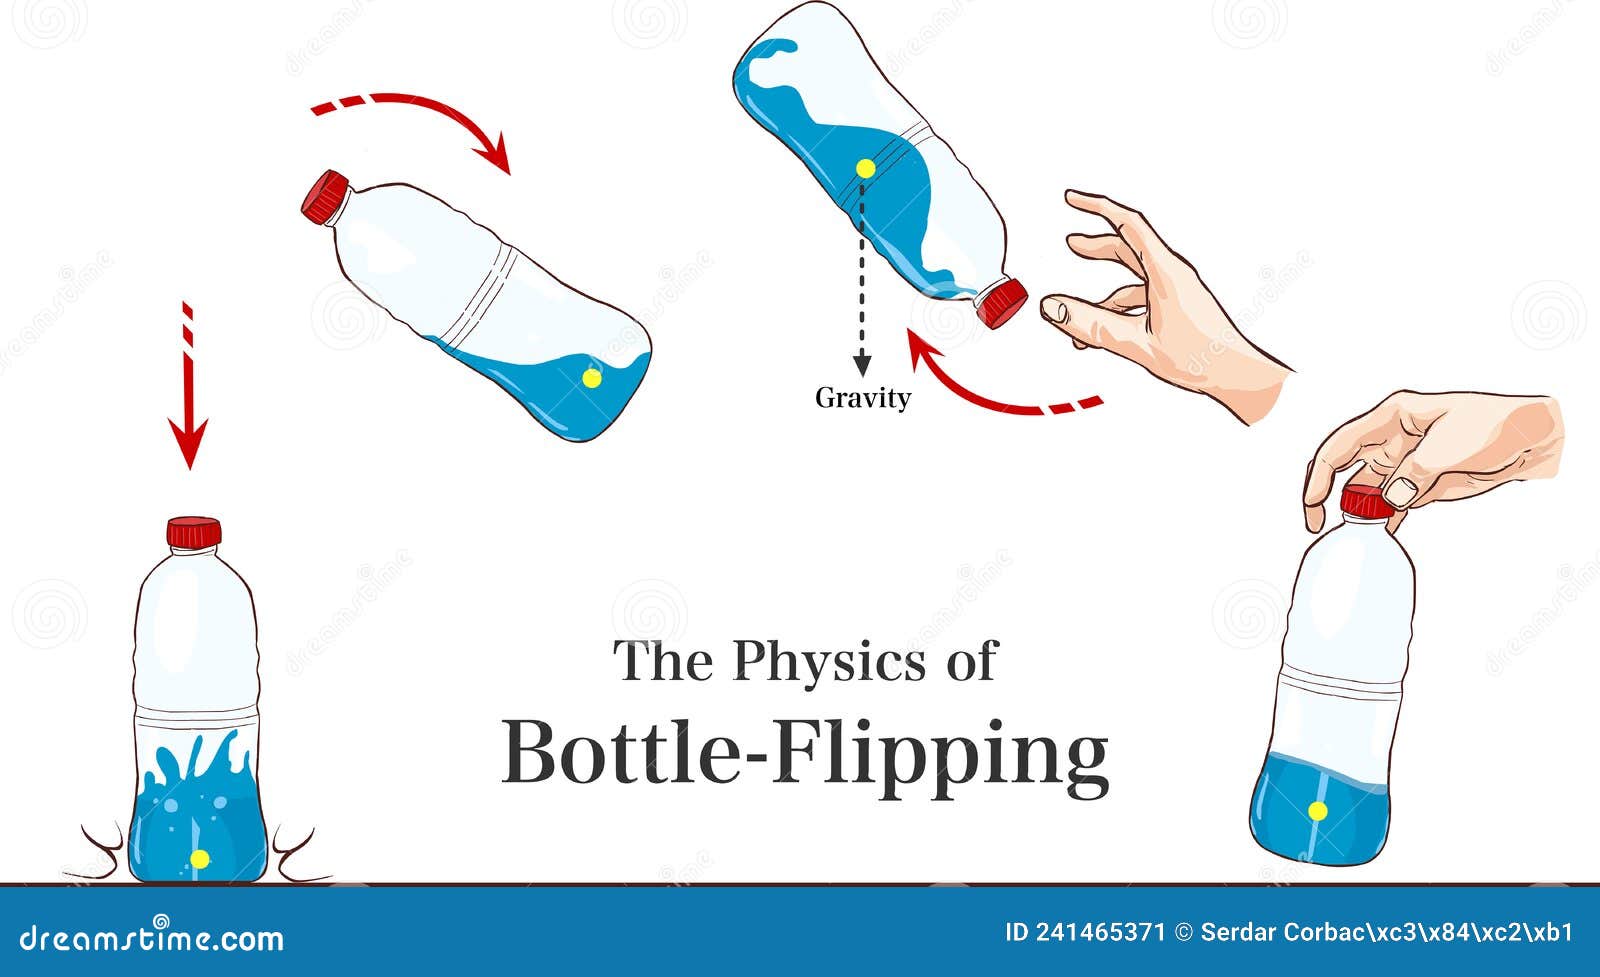 https://thumbs.dreamstime.com/z/physics-bottle-flipping-vector-illustration-241465371.jpg